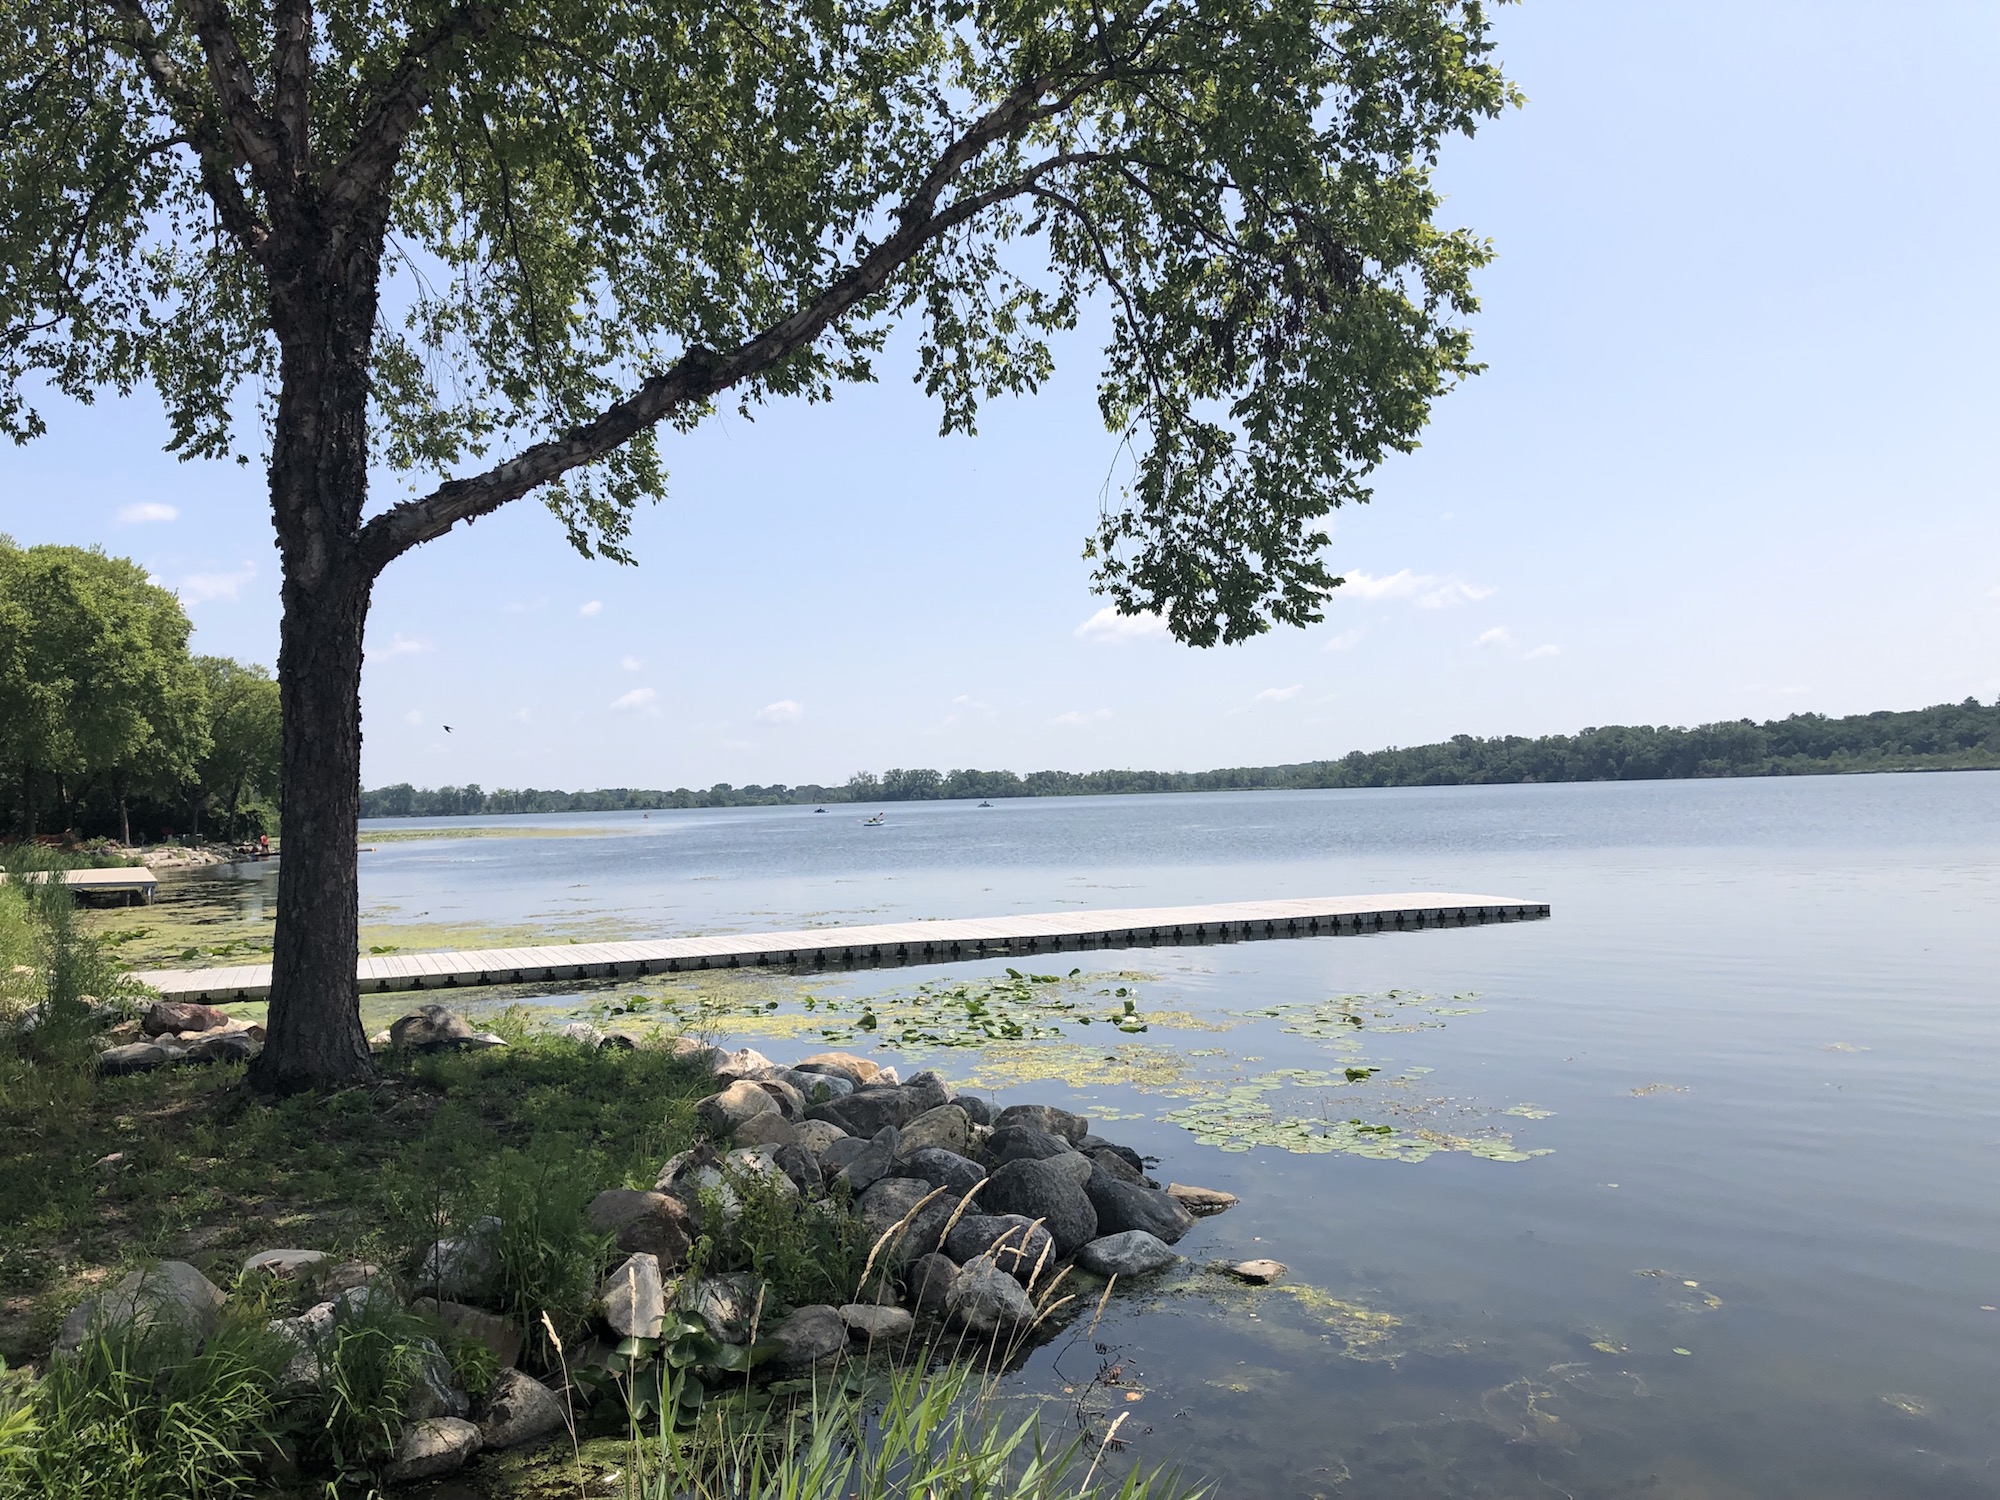 Lake Wingra on July 23, 2019.